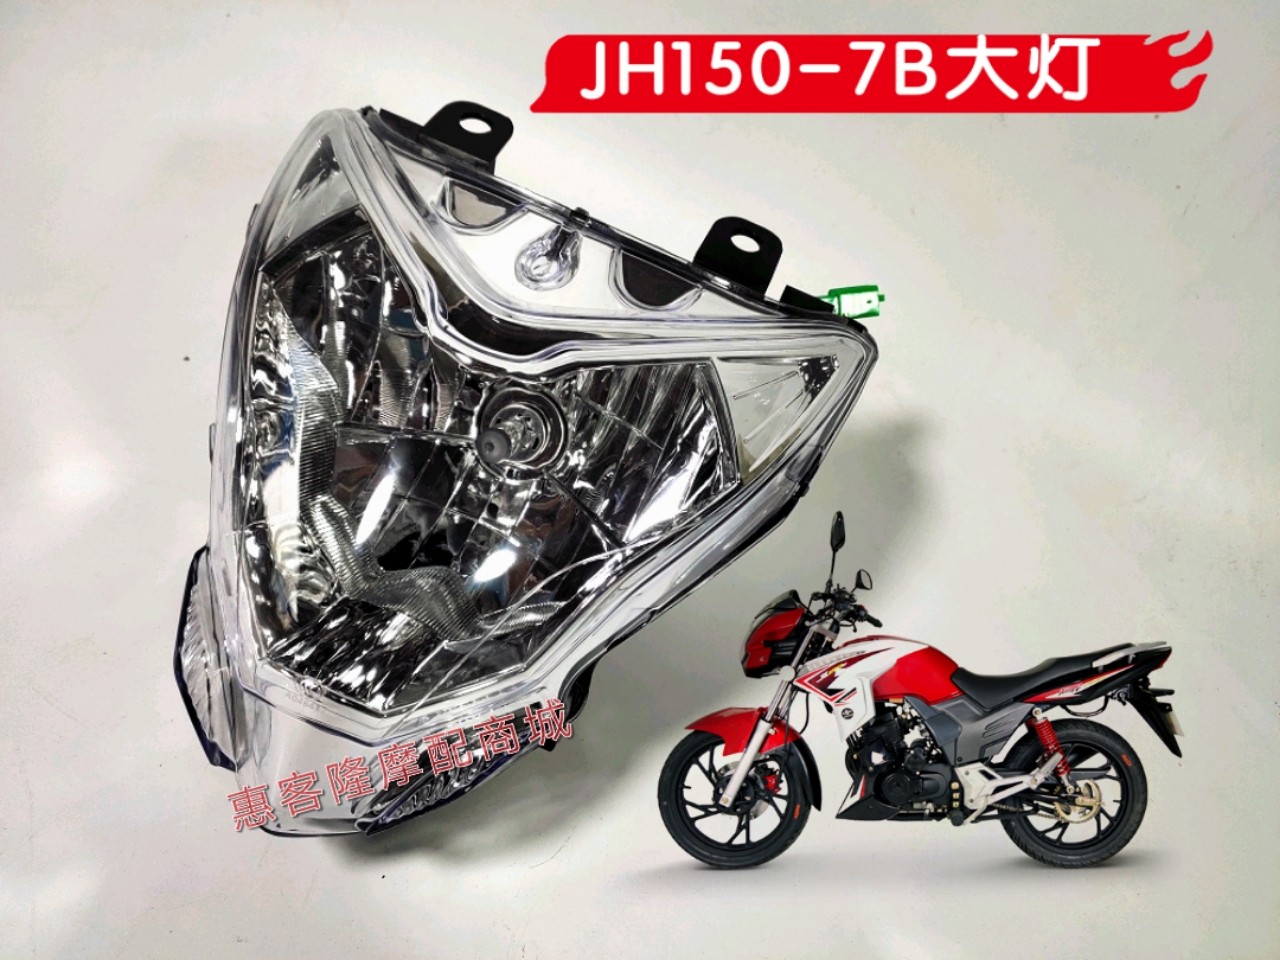 嘉陵摩托车配件JH150-7B超悍头罩前大灯总成